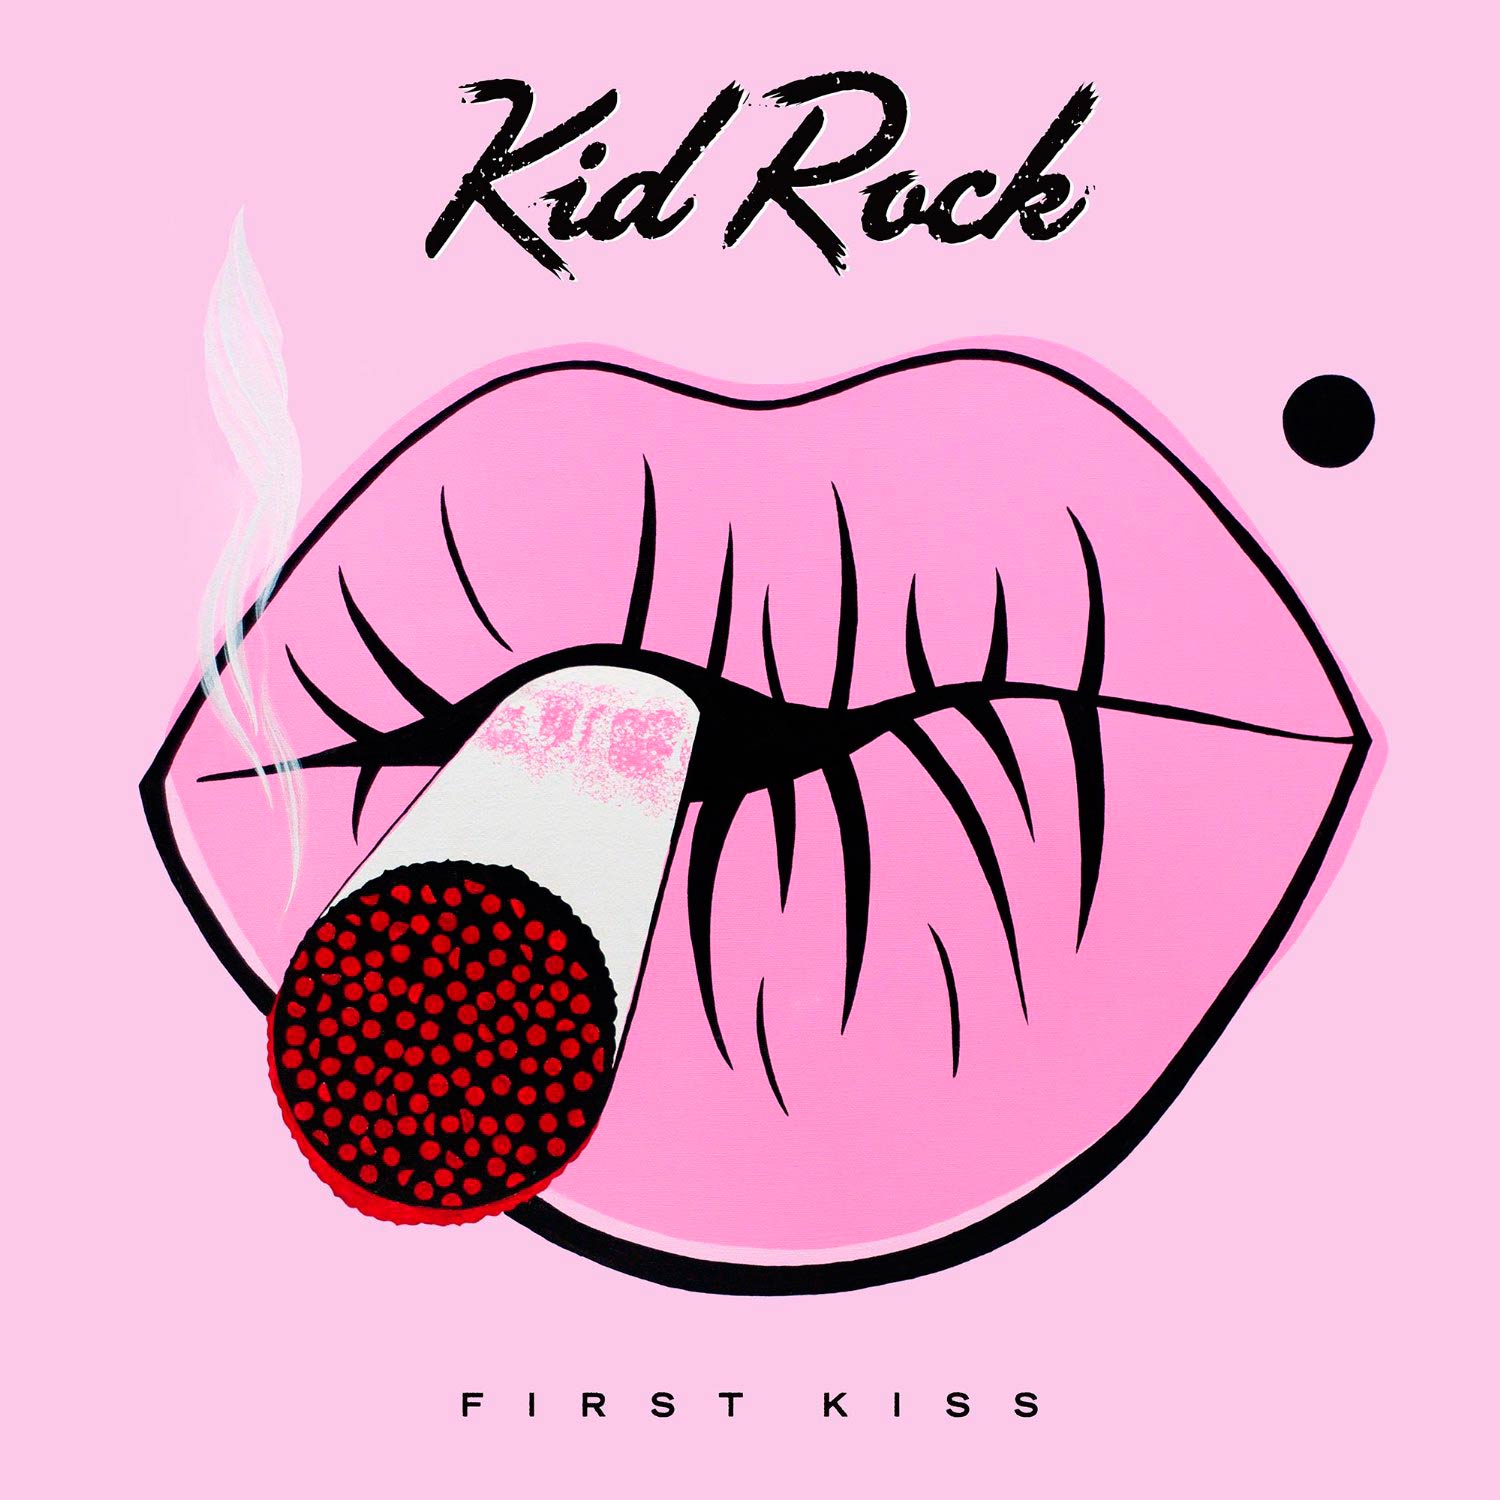 Kid Rock: First kiss, la portada del disco